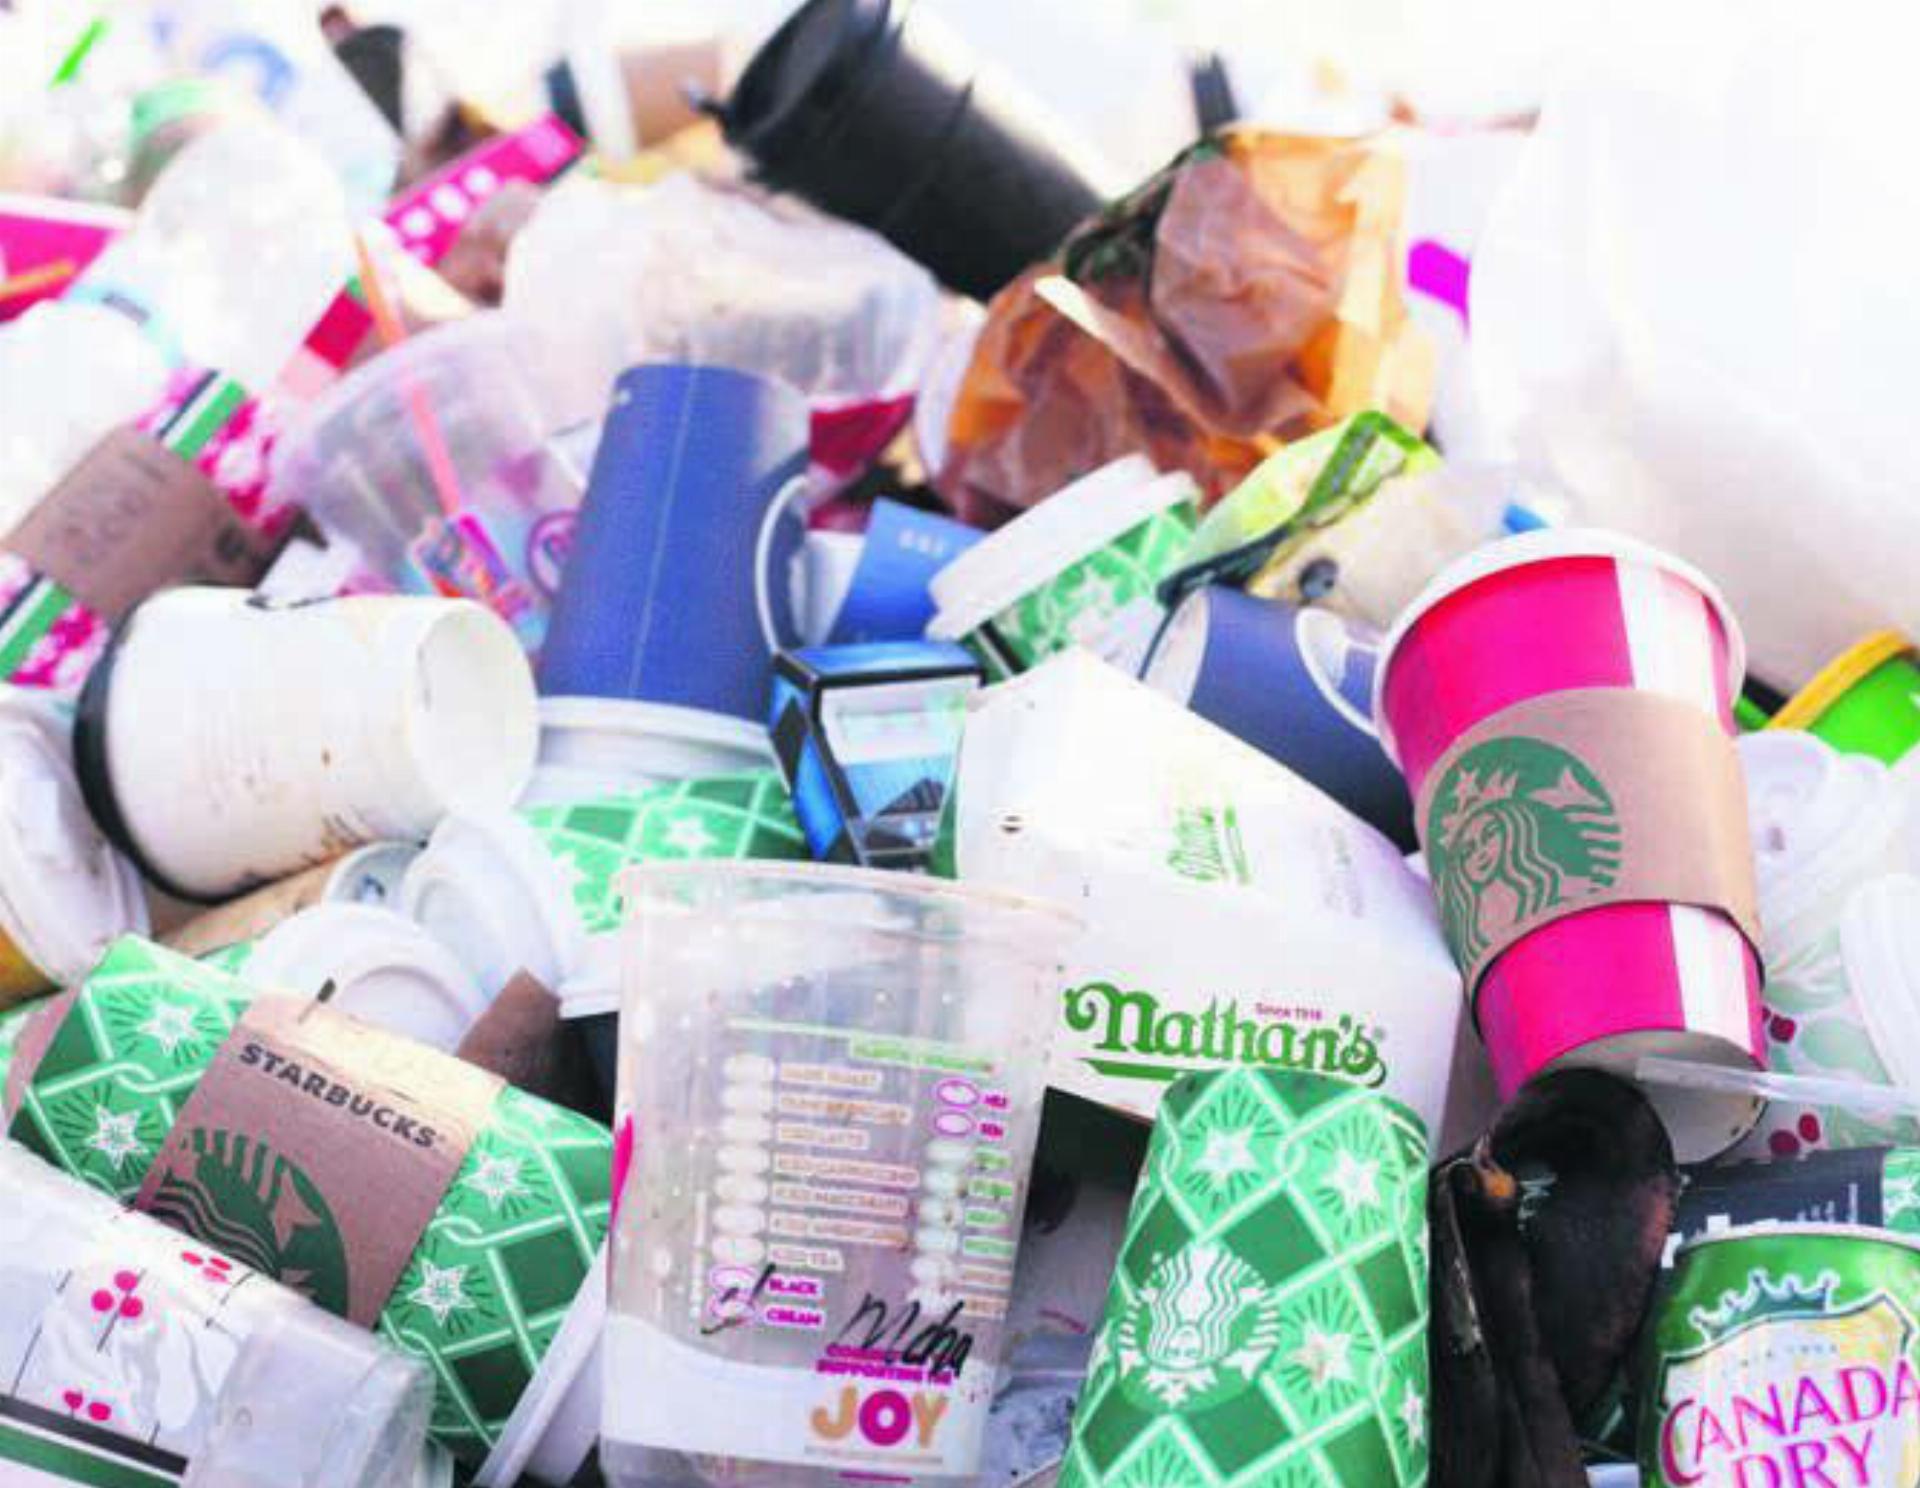 Gerade bei Take-away-Betrieben fällt viel Abfall an, ein Verbot betreffend Einweggeschirr oder Verpackungsmaterial ist (noch) nicht möglich. Bild: pixabay